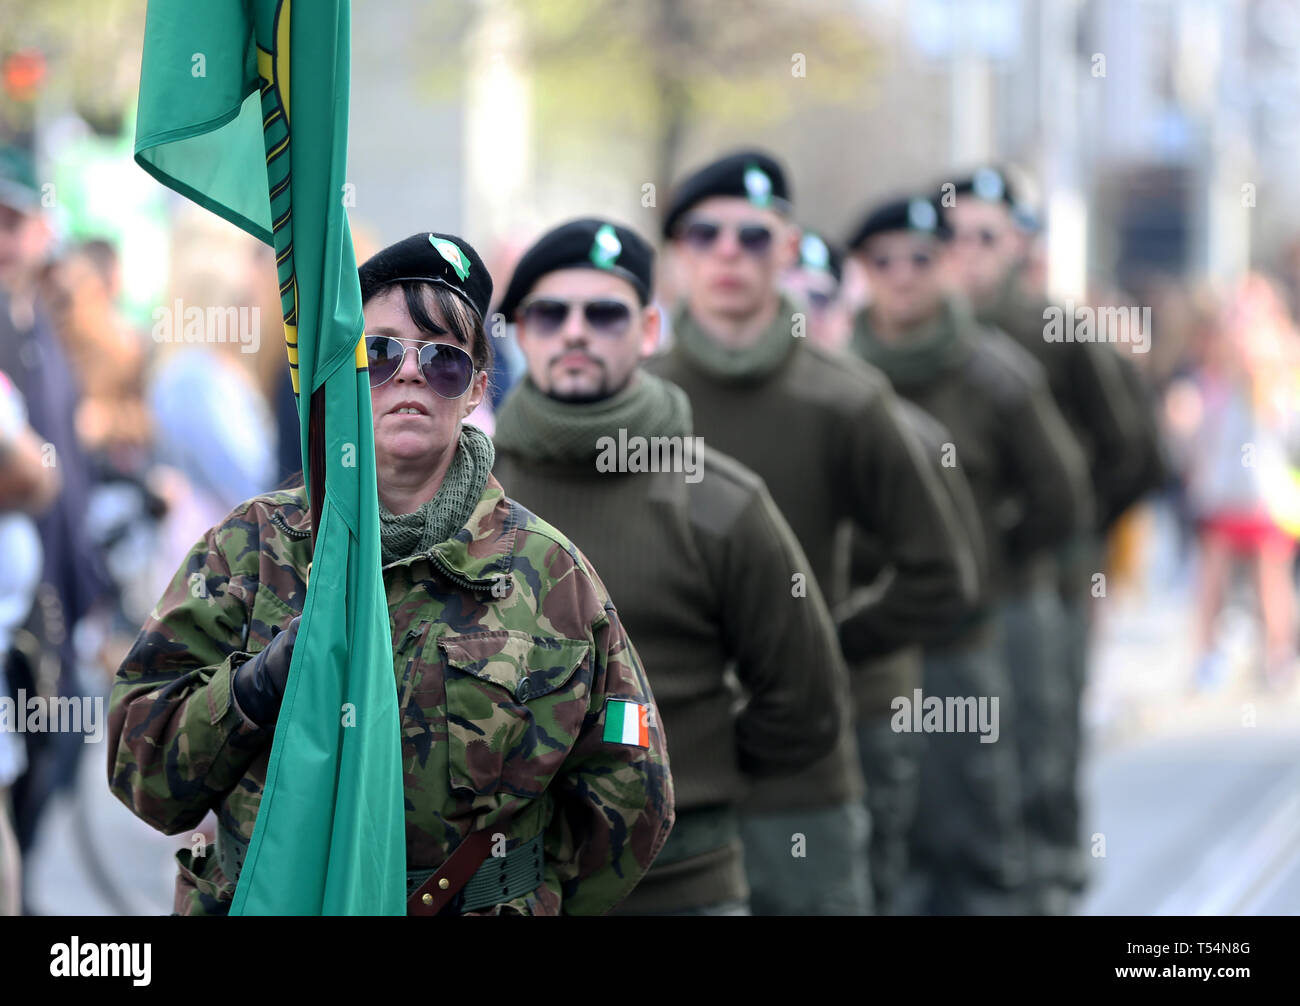 Nouveau groupe de soutien de l'IRA, Saoradh, défilés à travers le centre-ville de Dublin en uniformes paramilitaires, en dépit d'indignation au tournage de mort Lyra journaliste McKee à Londonderry (Derry) cette semaine. Photo : Sam Boal/RollingNews.ie Banque D'Images